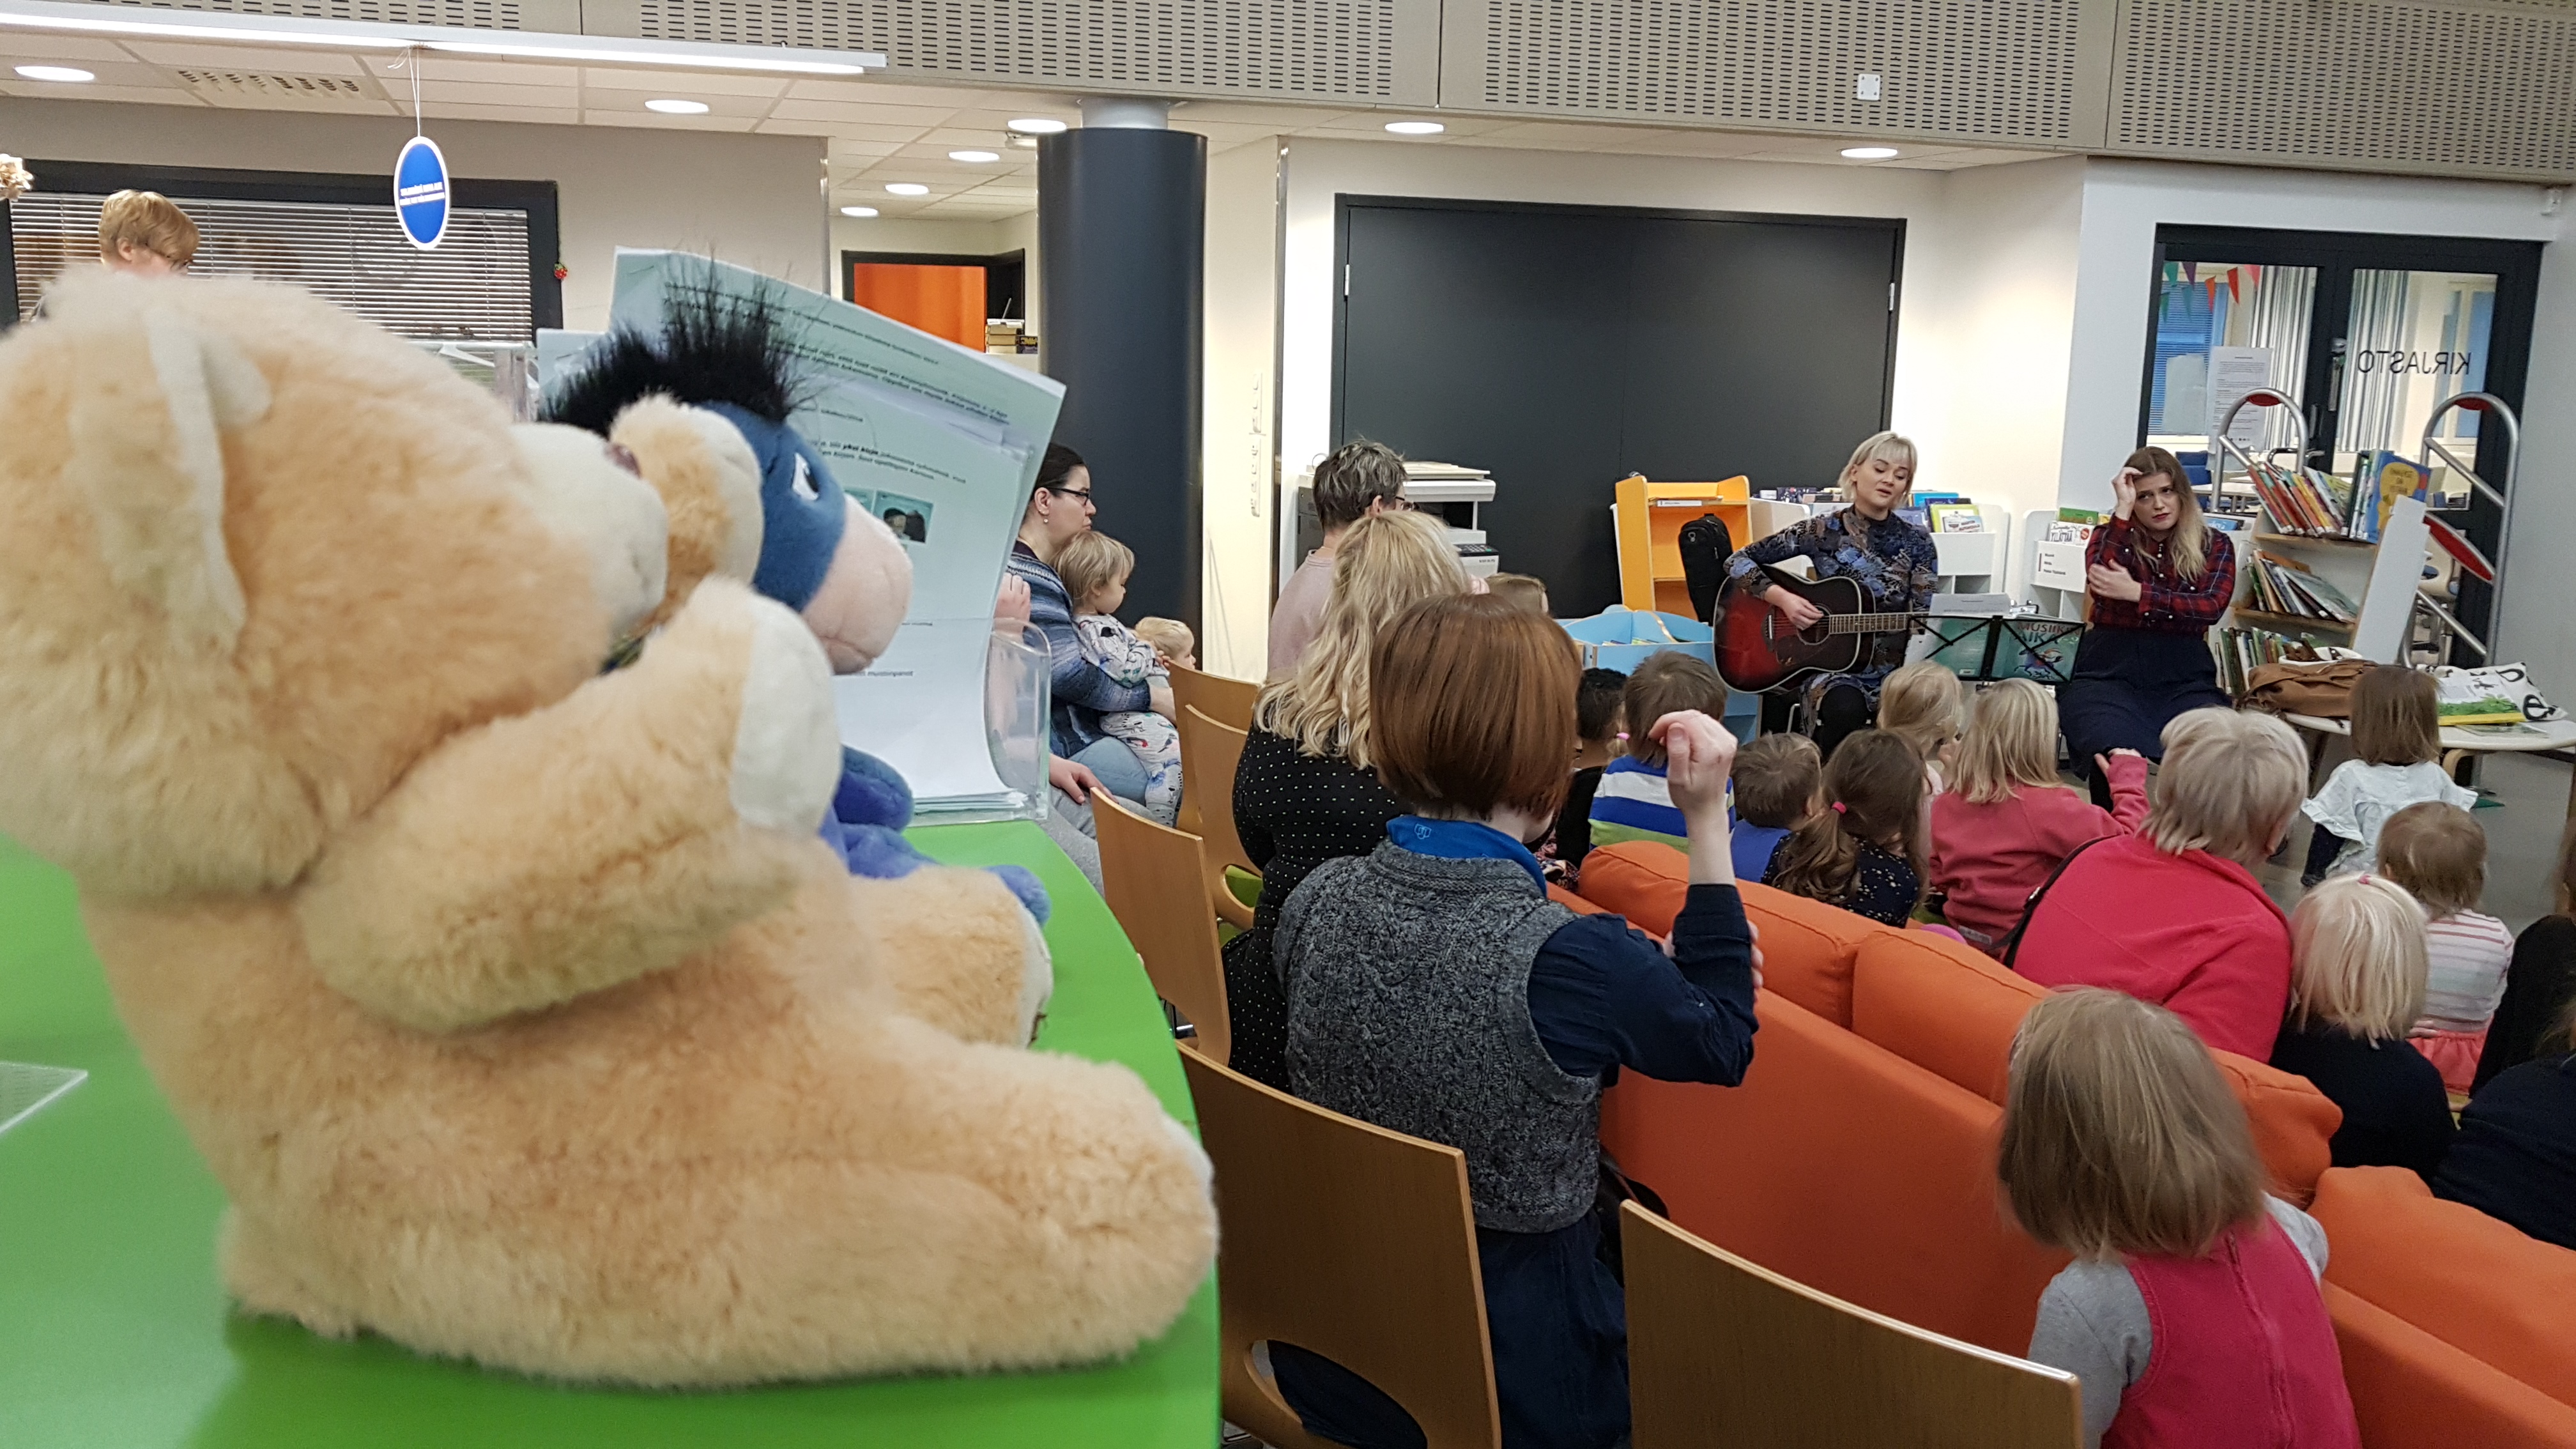 Kuvassa on musiikkitilaisuus kirjastossa. Esiintyjät soittavat kitaraa ja laulavat ja lapset osallistuvat tapahtumaan leikkien ja laulaen.